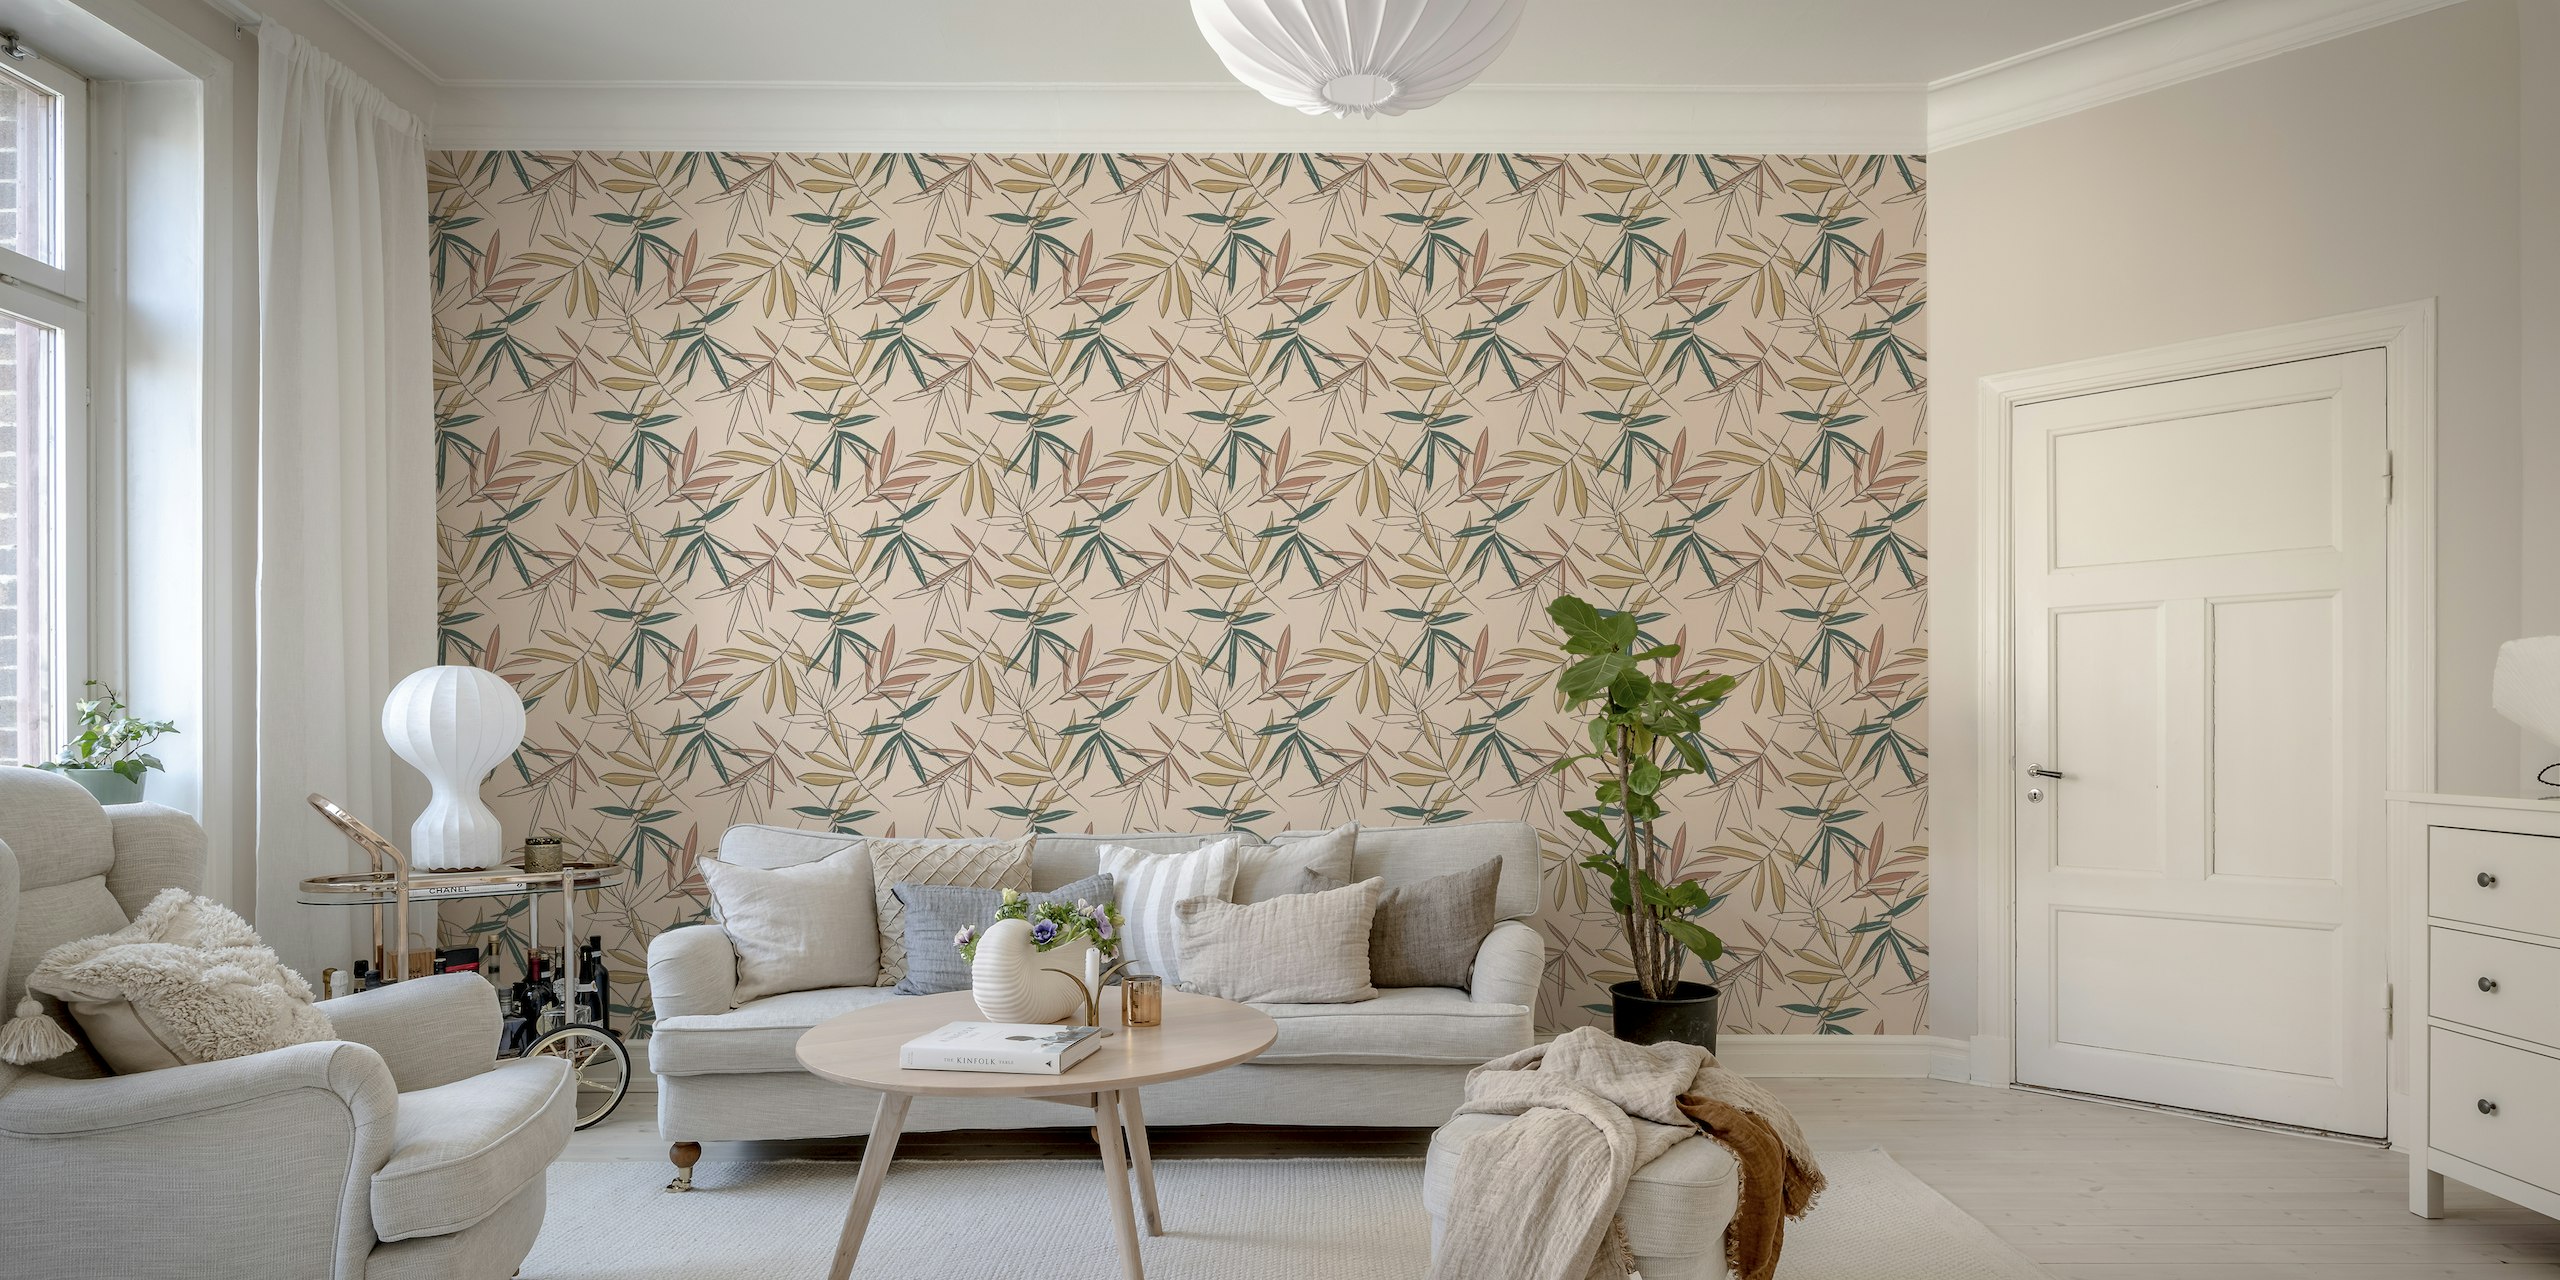 Mural de pared de palmeras vintage con elegantes hojas de palmera en colores apagados